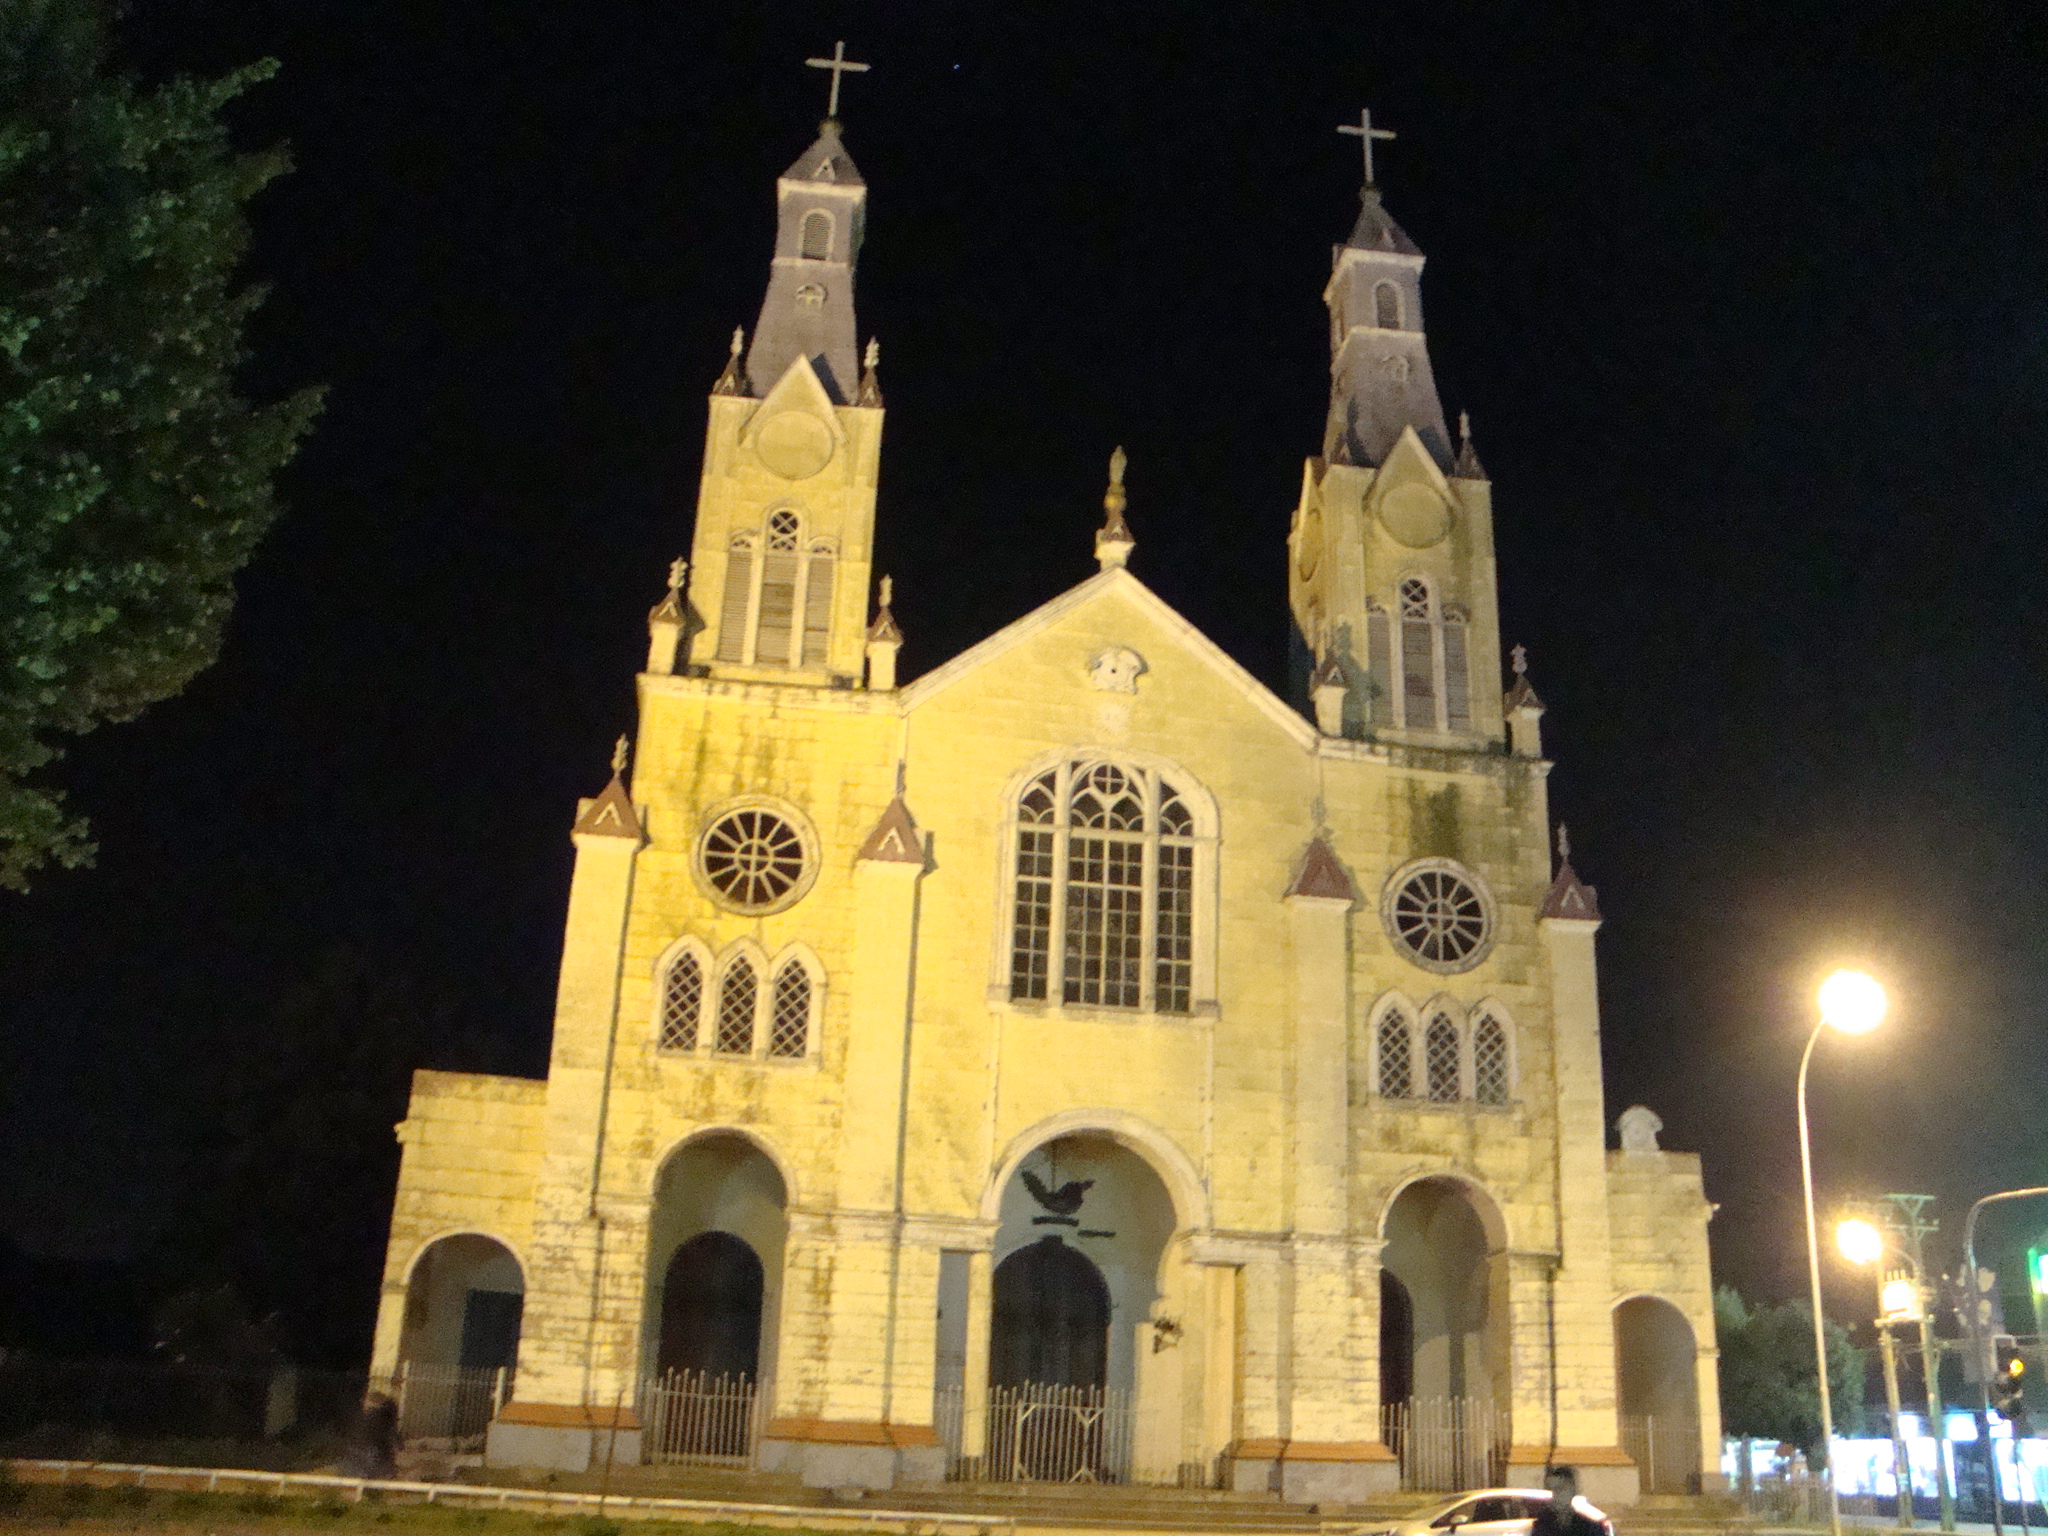 Foto: Catedral de Castro - Castro, Chile